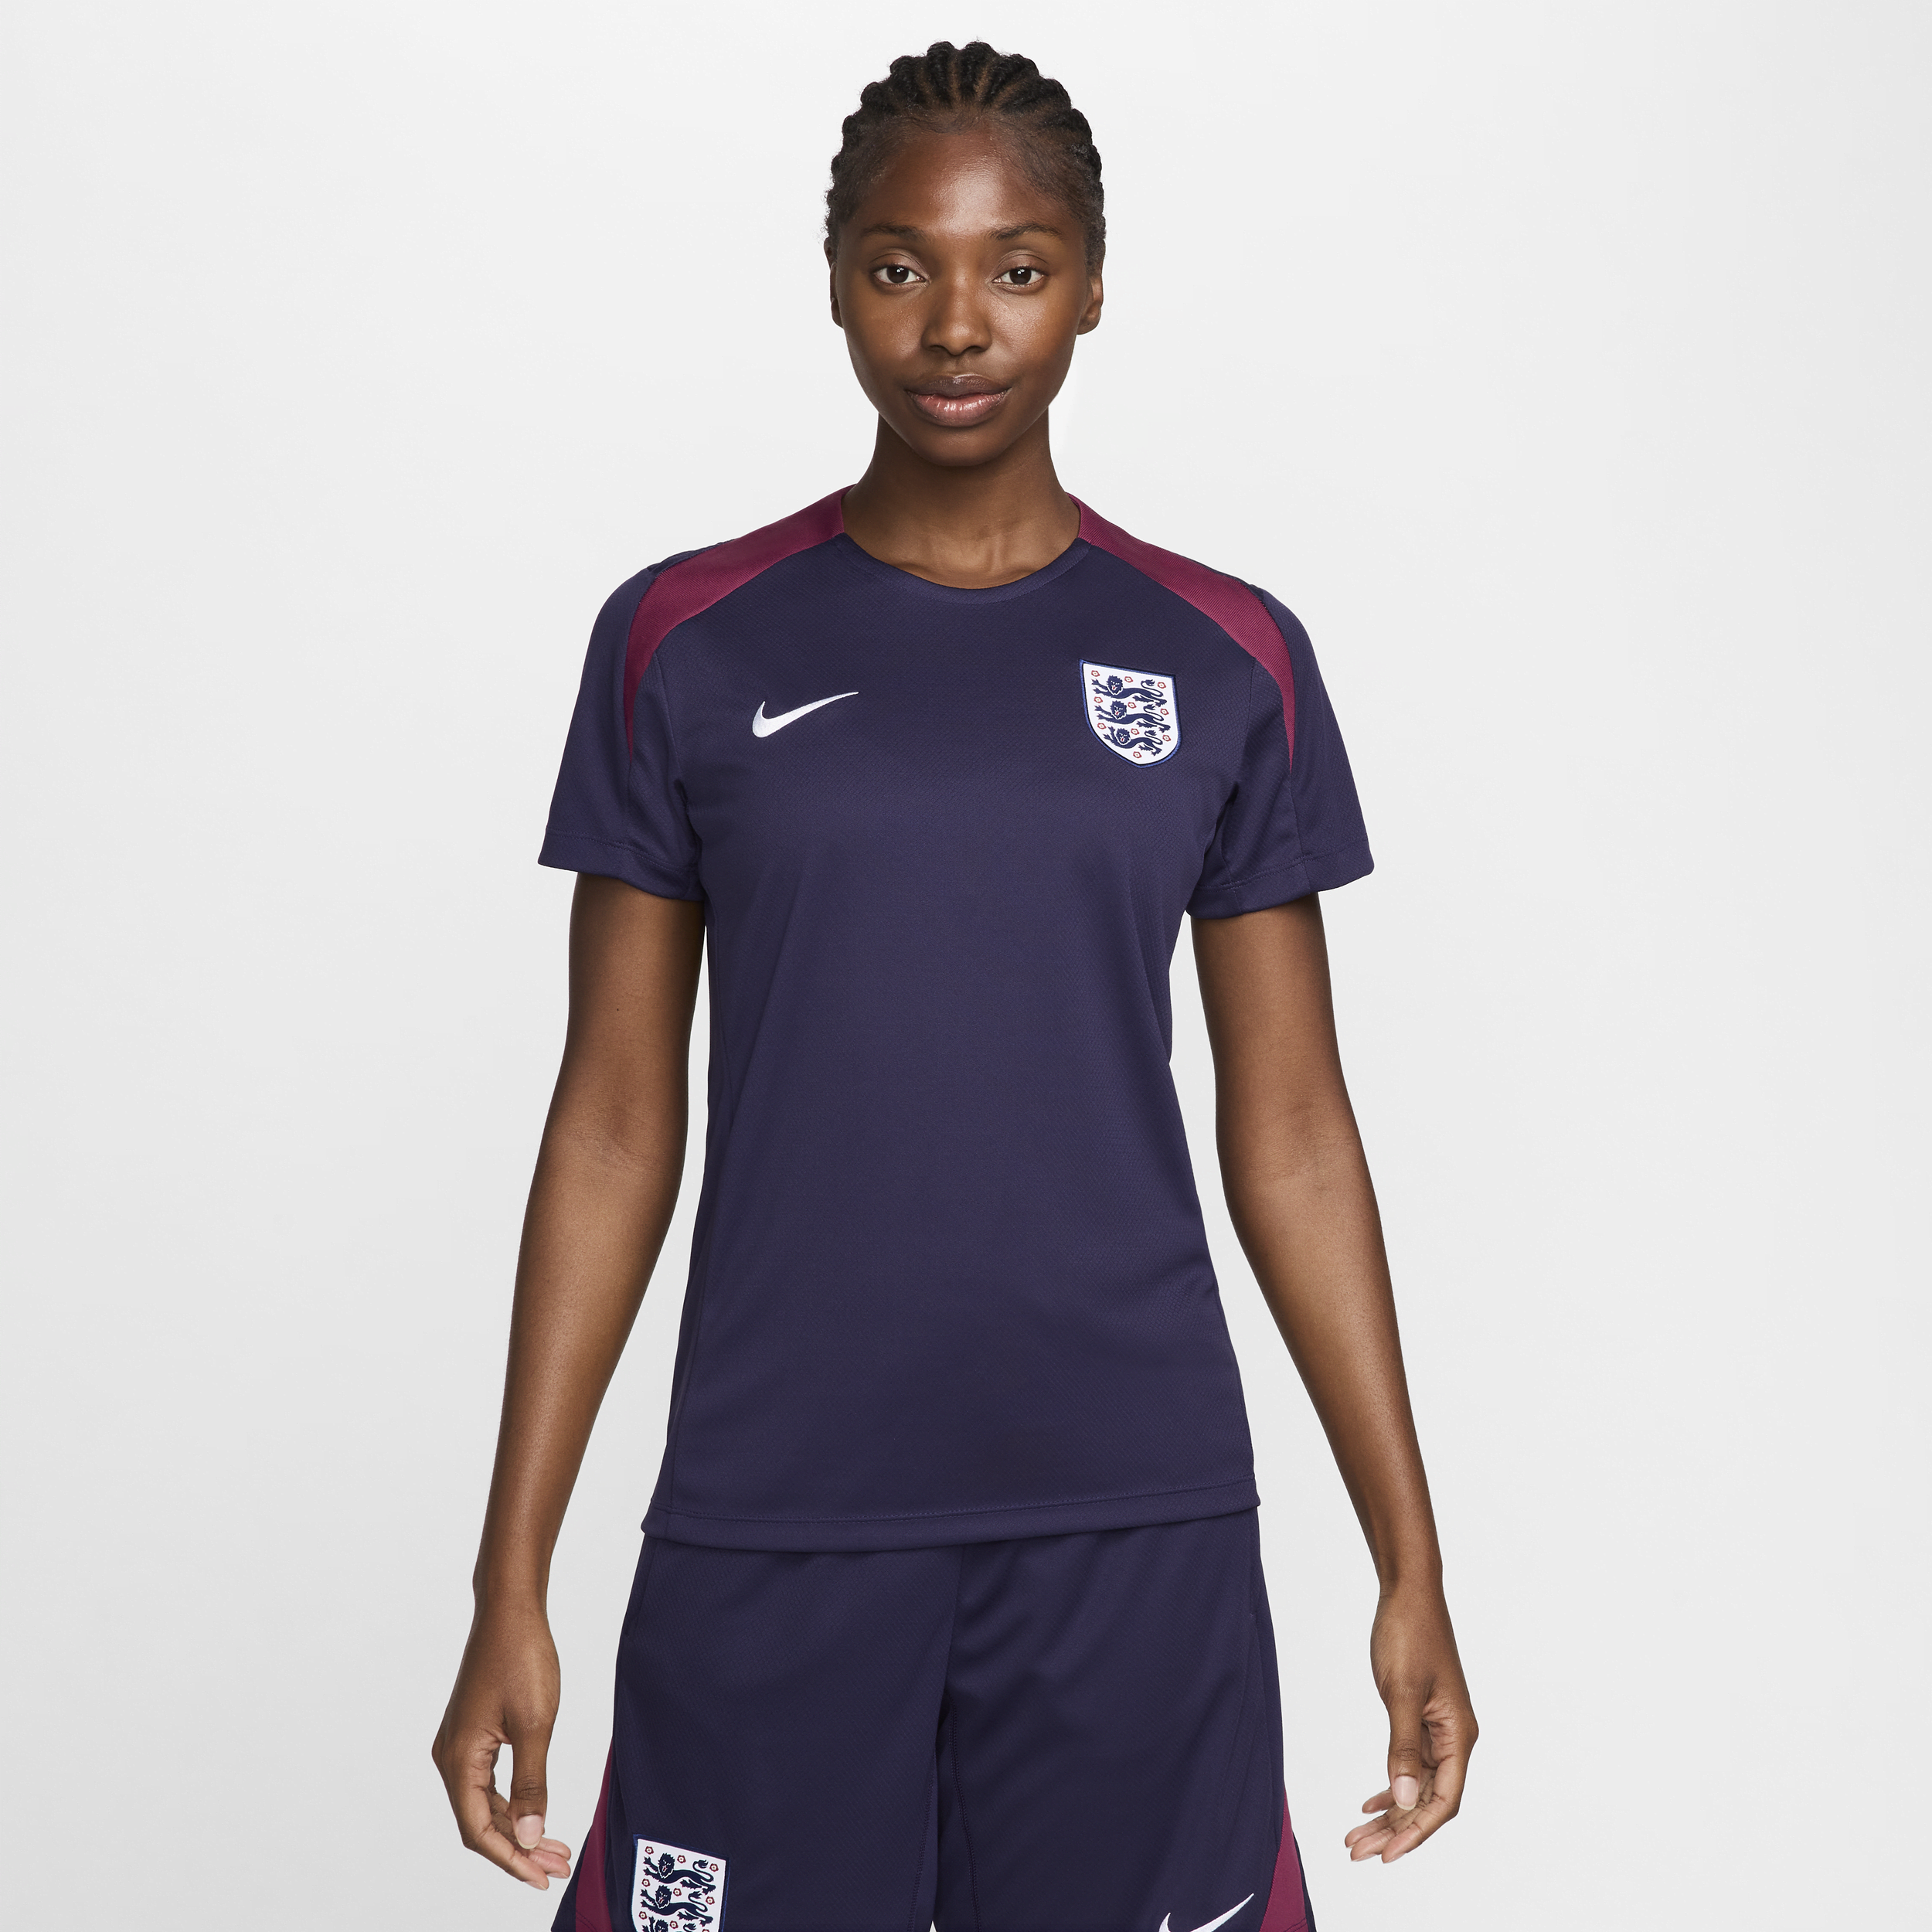 Engeland Strike Nike Dri-FIT knit voetbaltop met korte mouwen voor dames - Paars